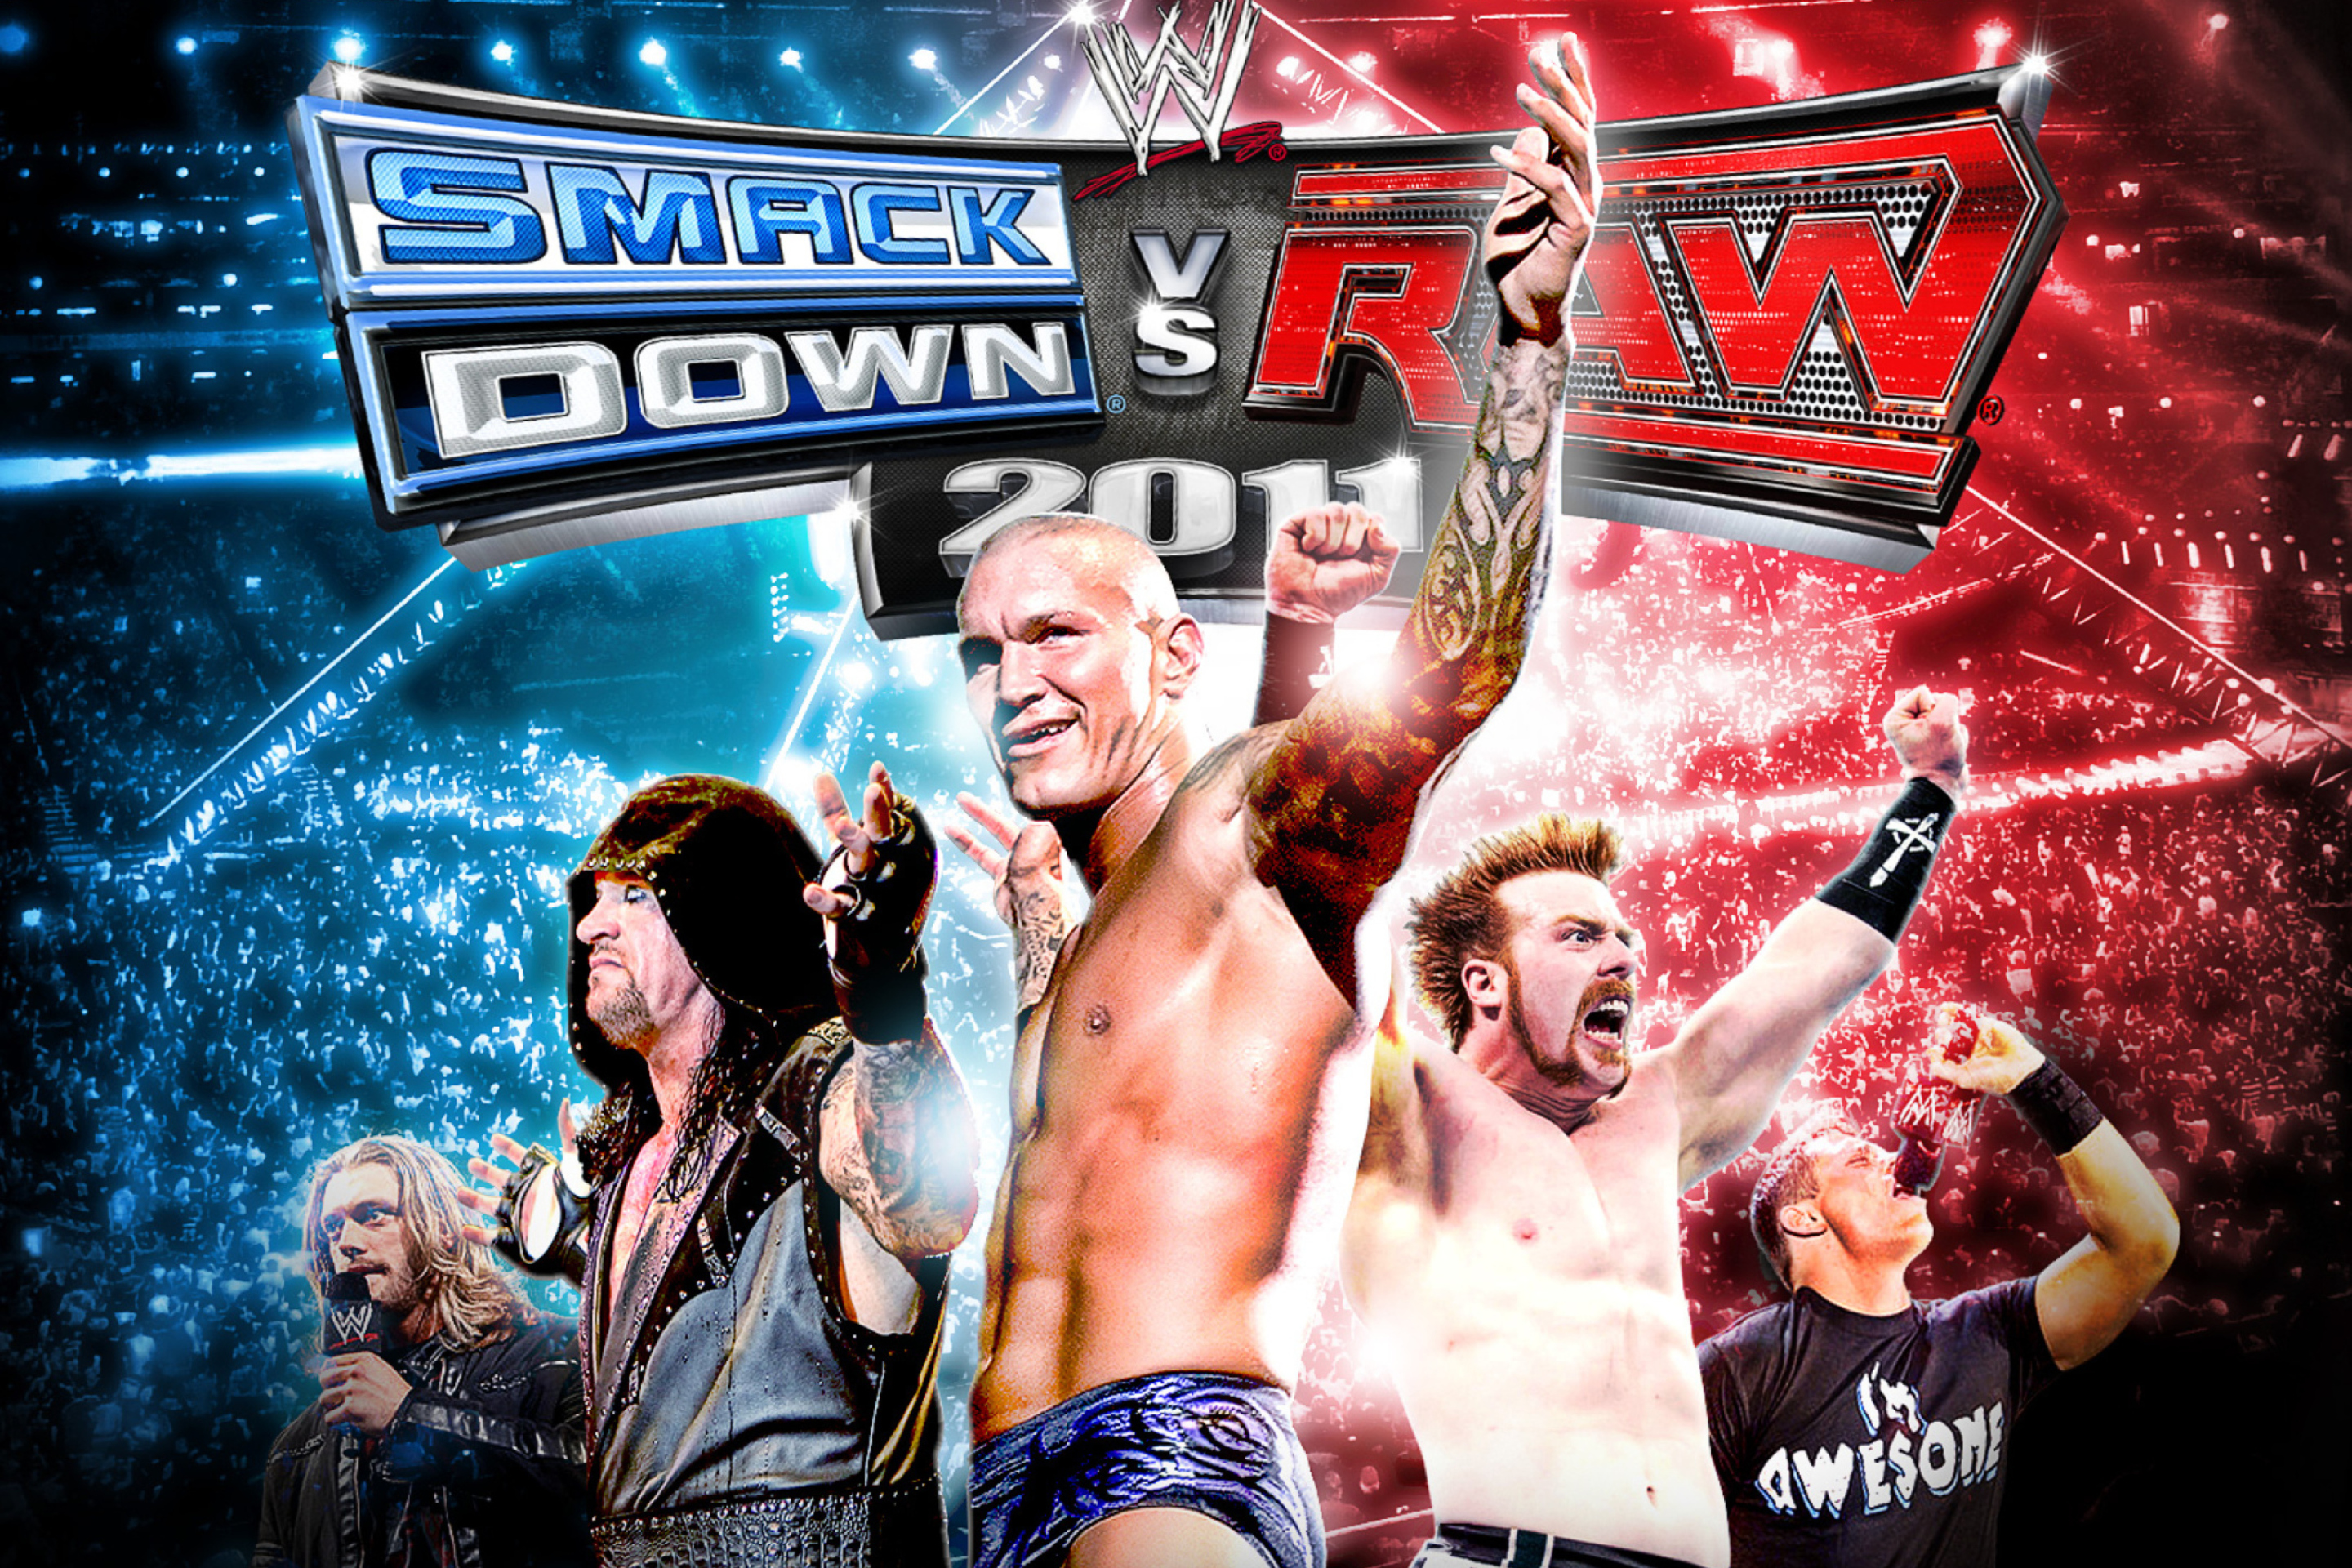 Das Smackdown Vs Raw - Royal Rumble Wallpaper 2880x1920